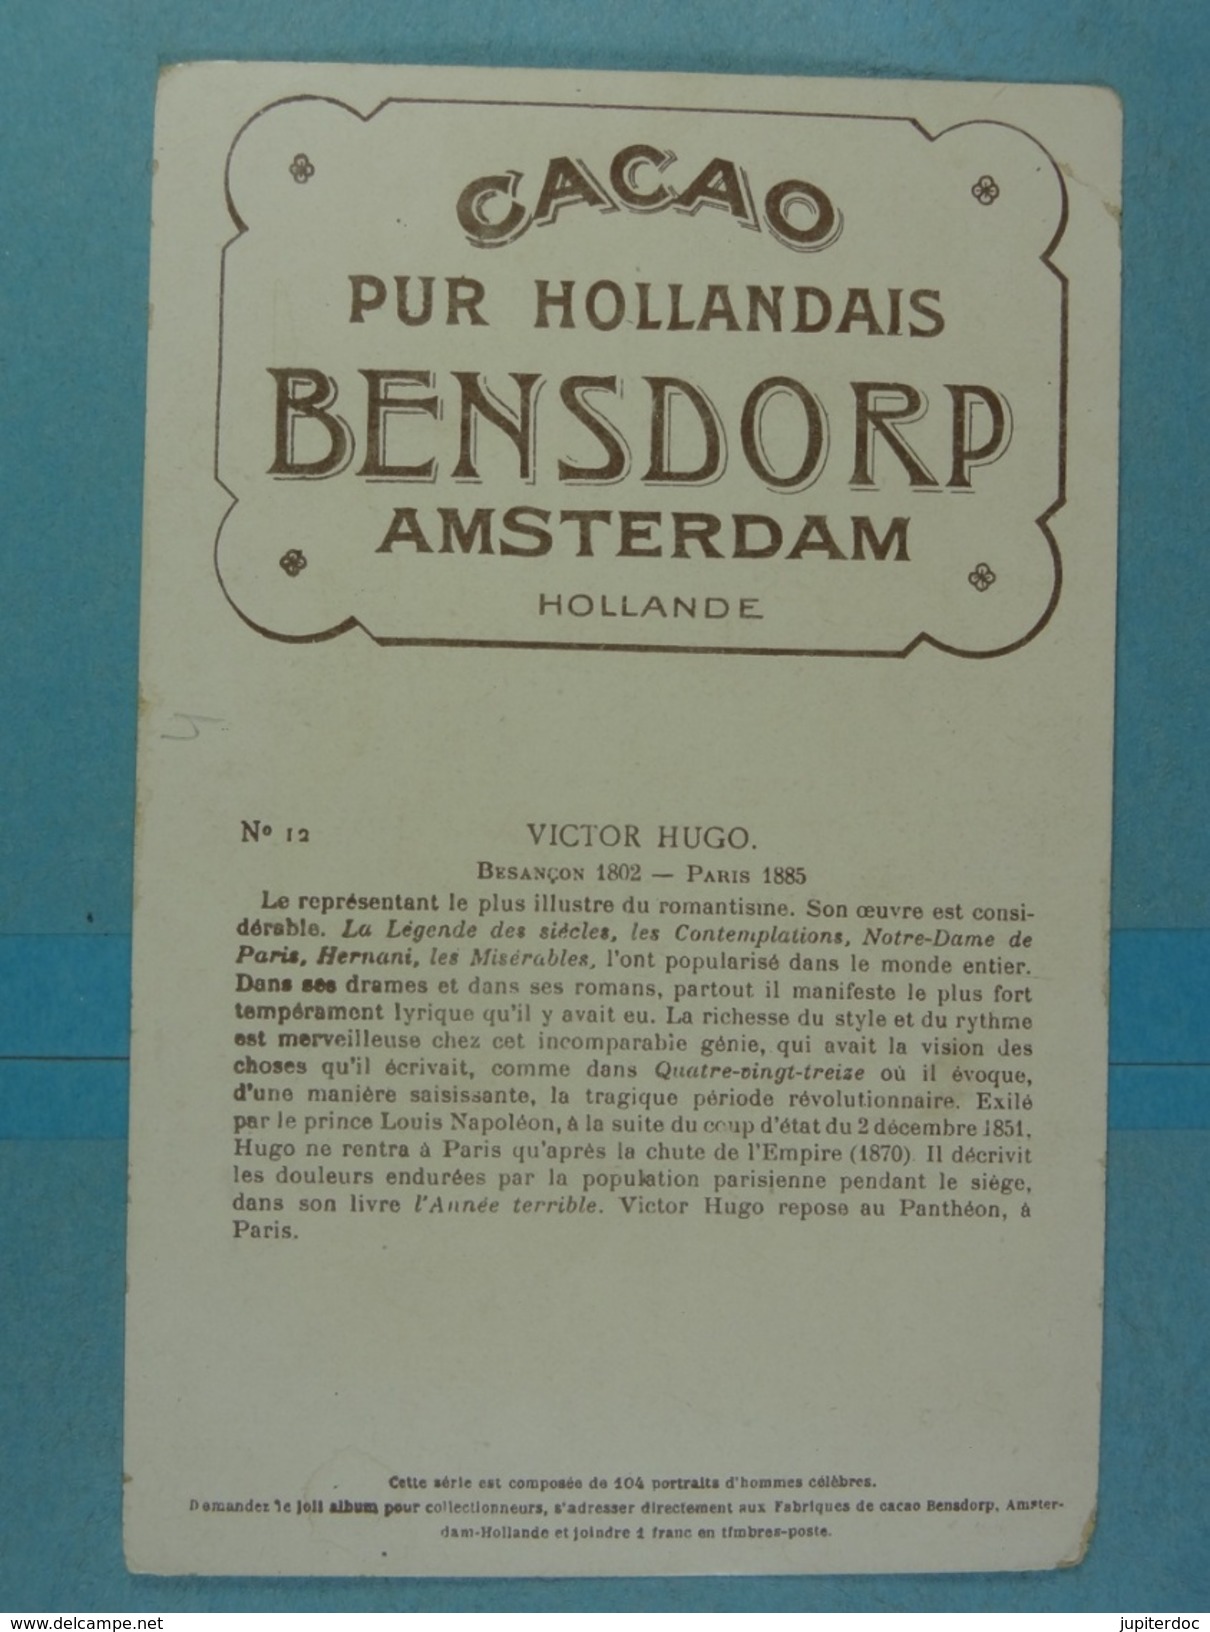 Cacao Pur Hollandais Bensdorp Amsterdam Victor Hugo - Advertising